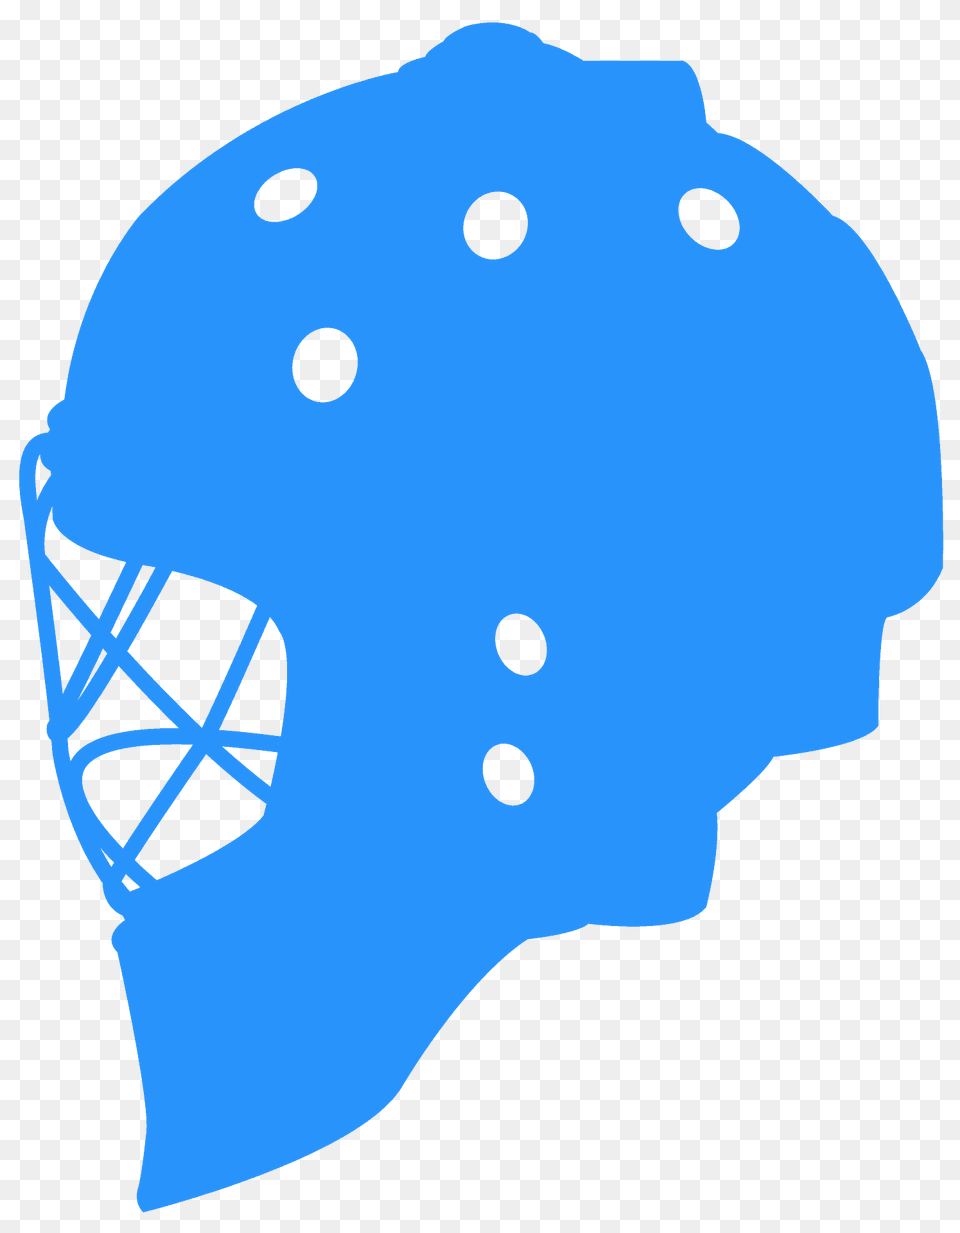 Hockey Goalie Mask Silhouette, Helmet, Mammal, Wildlife, Bear Free Png Download